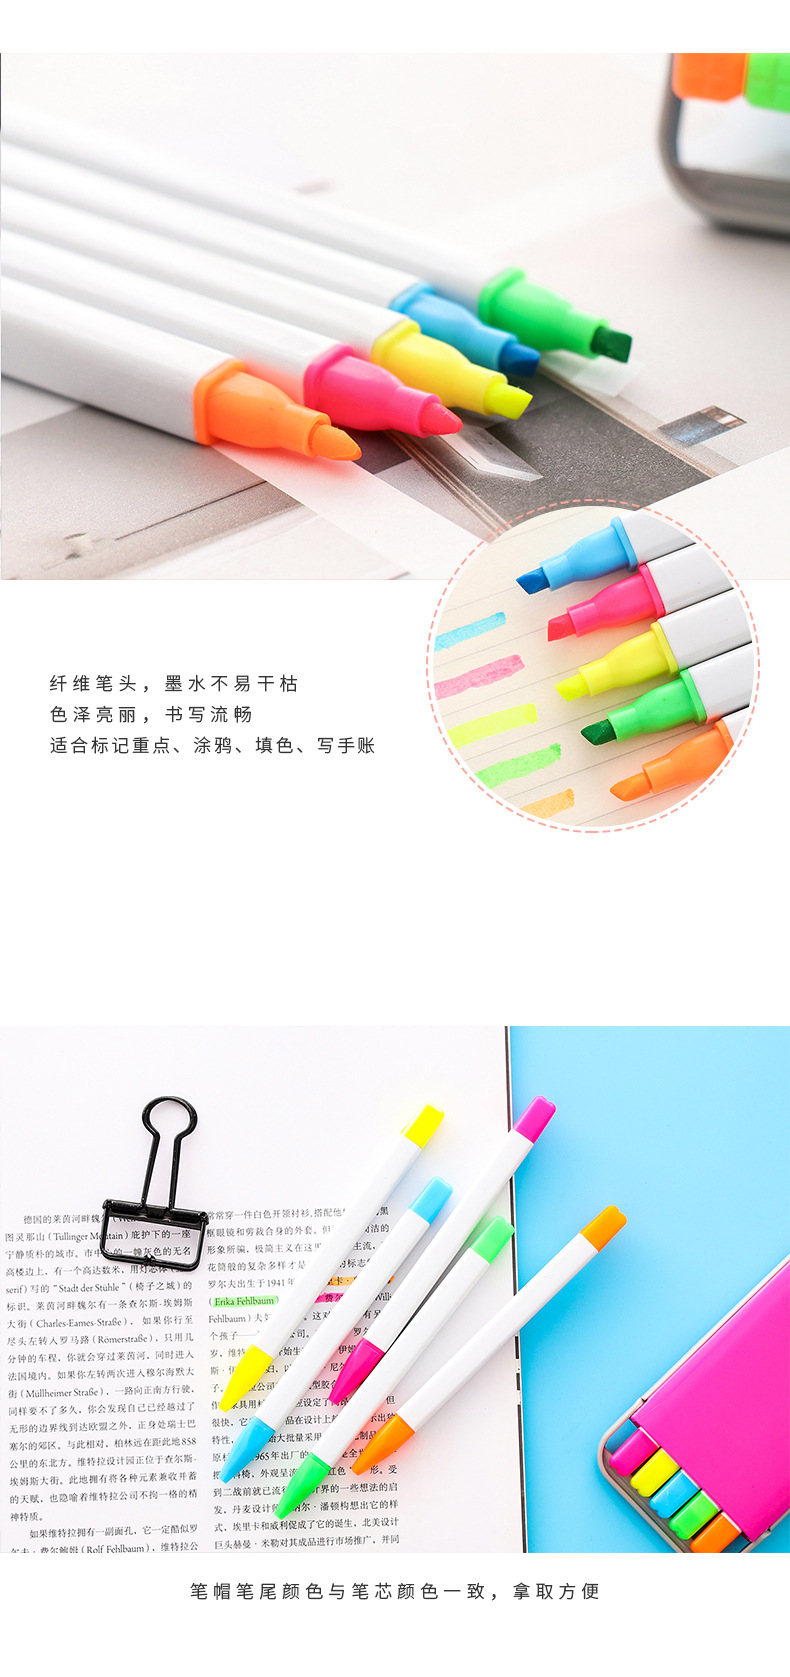 糖果色5色螢光筆組 學生必備多色記號筆 創意文具 多功能螢光筆組合